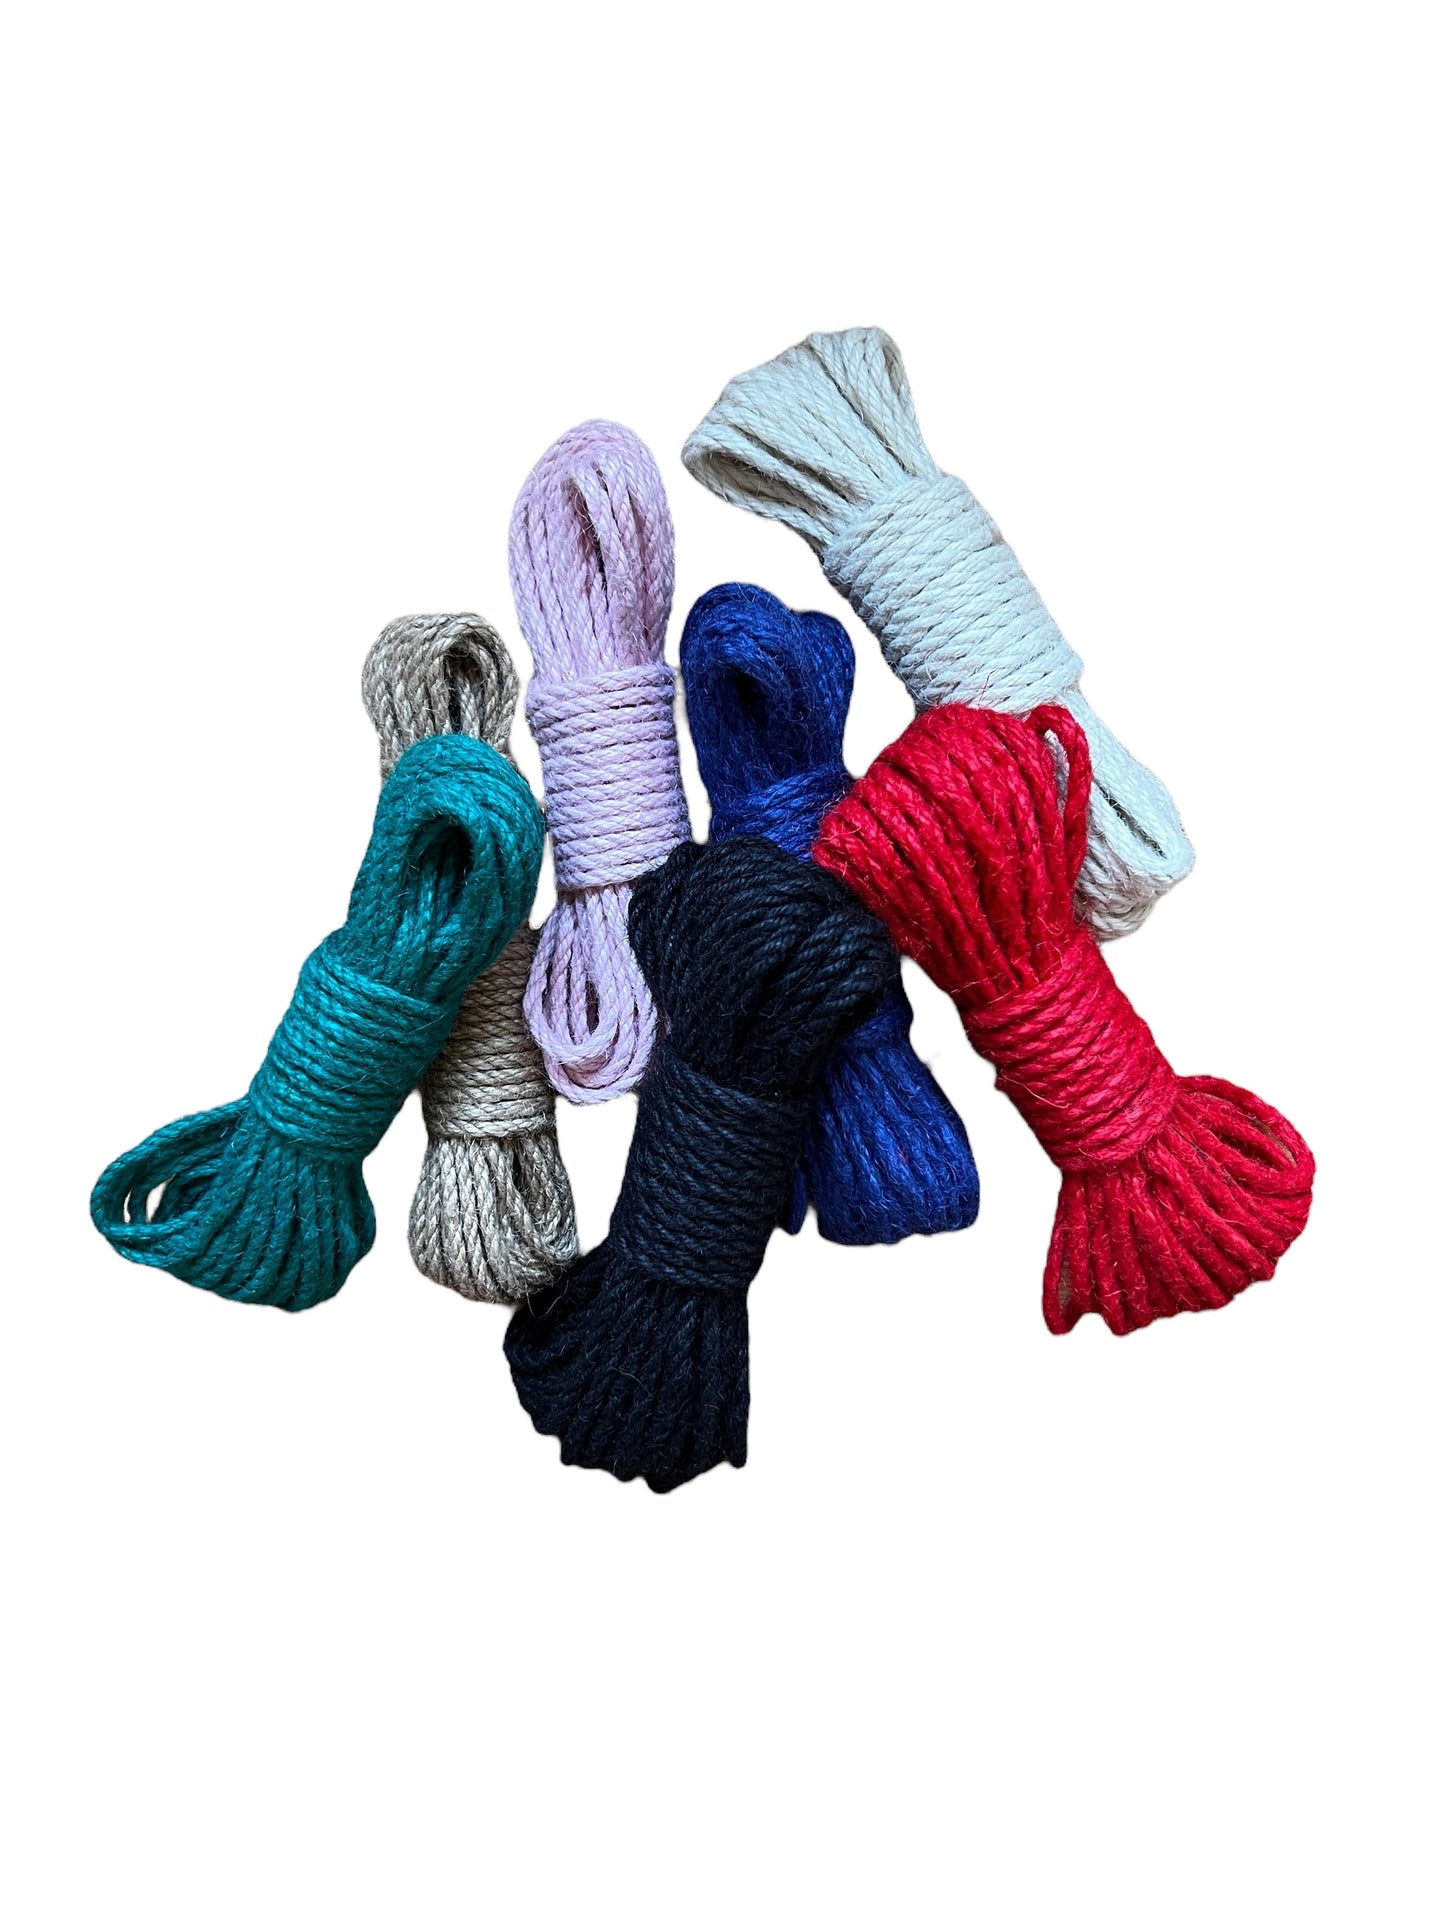 Svensktillverkade shibari bondage rep i jute, 10 meter. Välj bland många färger.